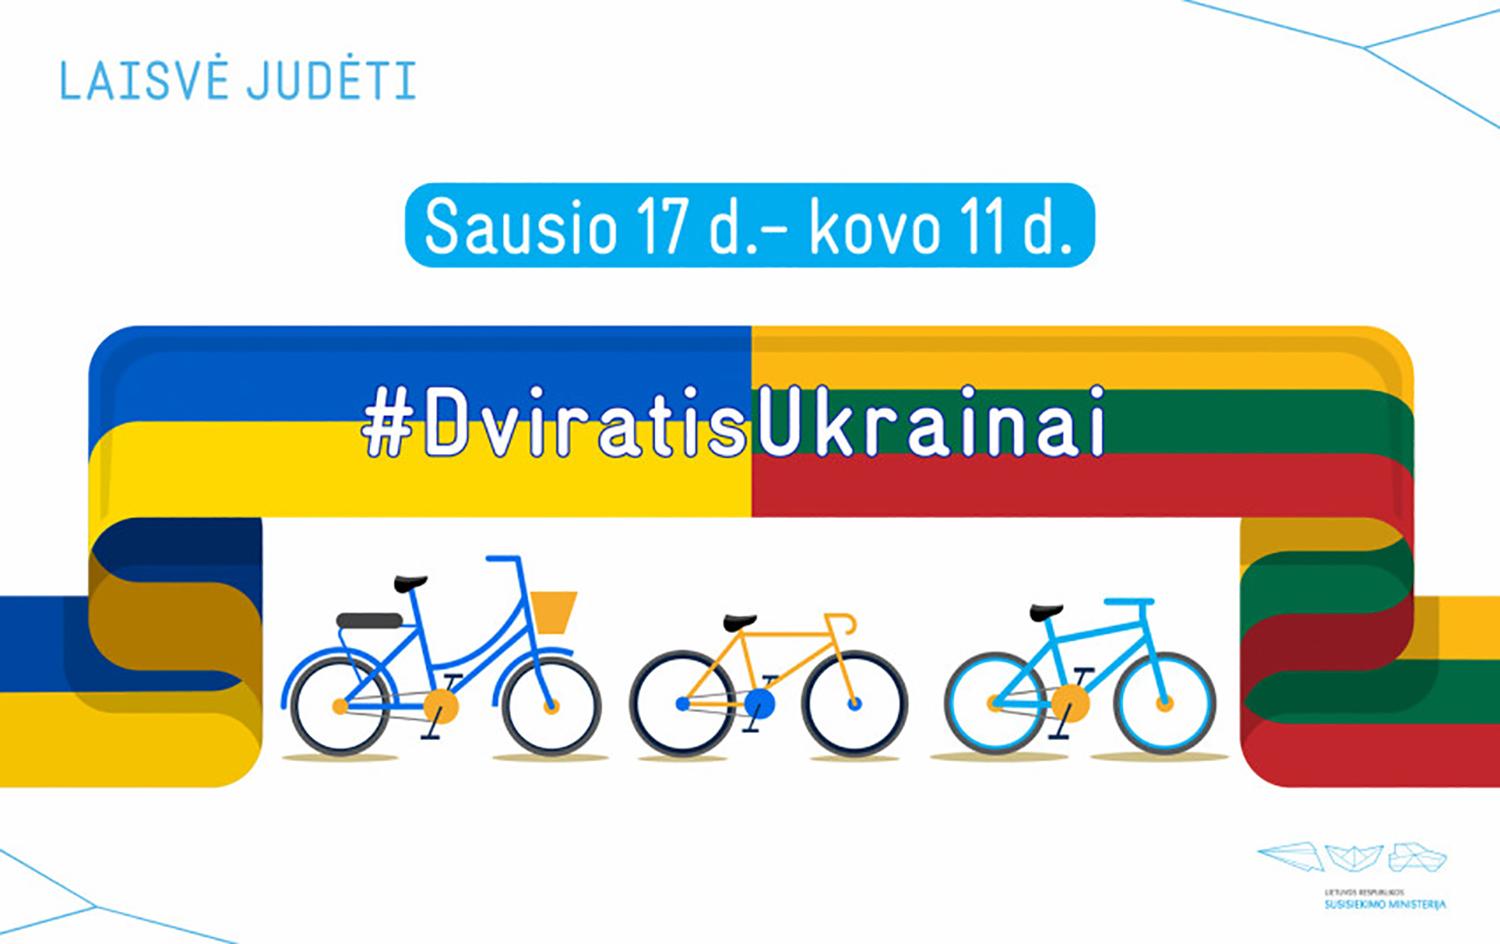 Kviečia dovanoti dviračius ukrainiečiams /